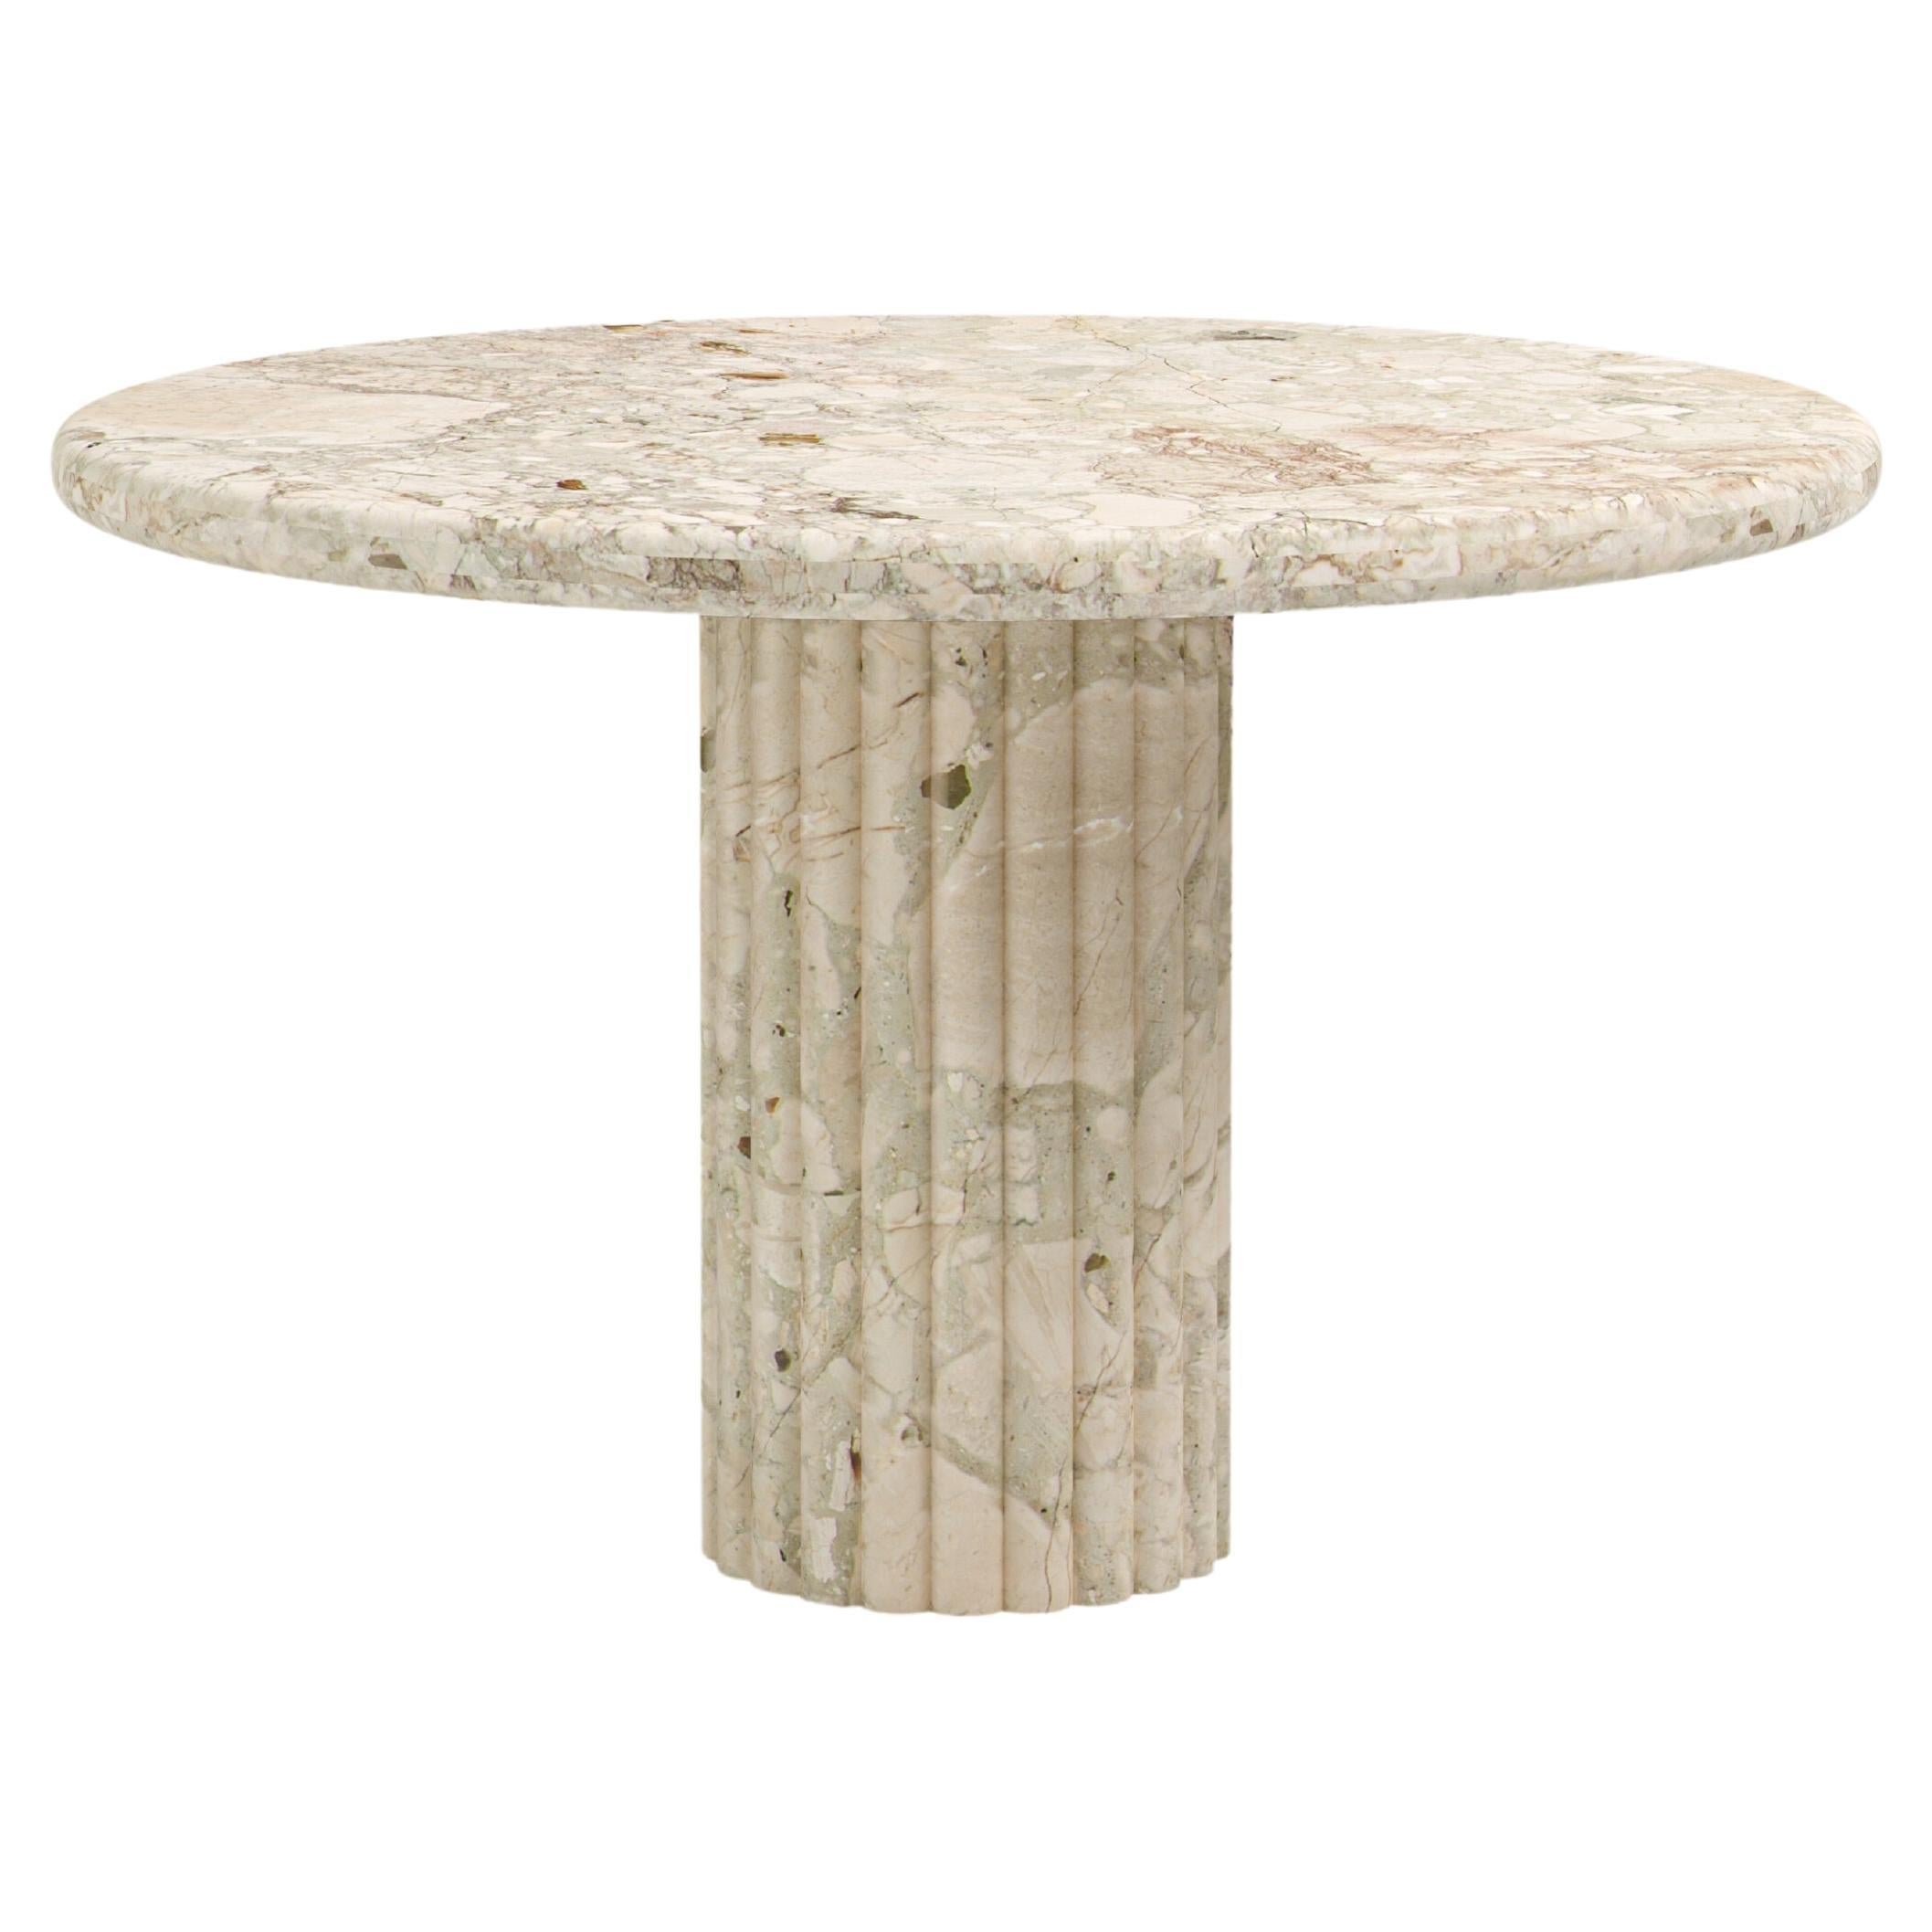 FORM(LA) Fluta Round Dining Table 36”L x 36”W x 30”H Breccia Rosa Marble